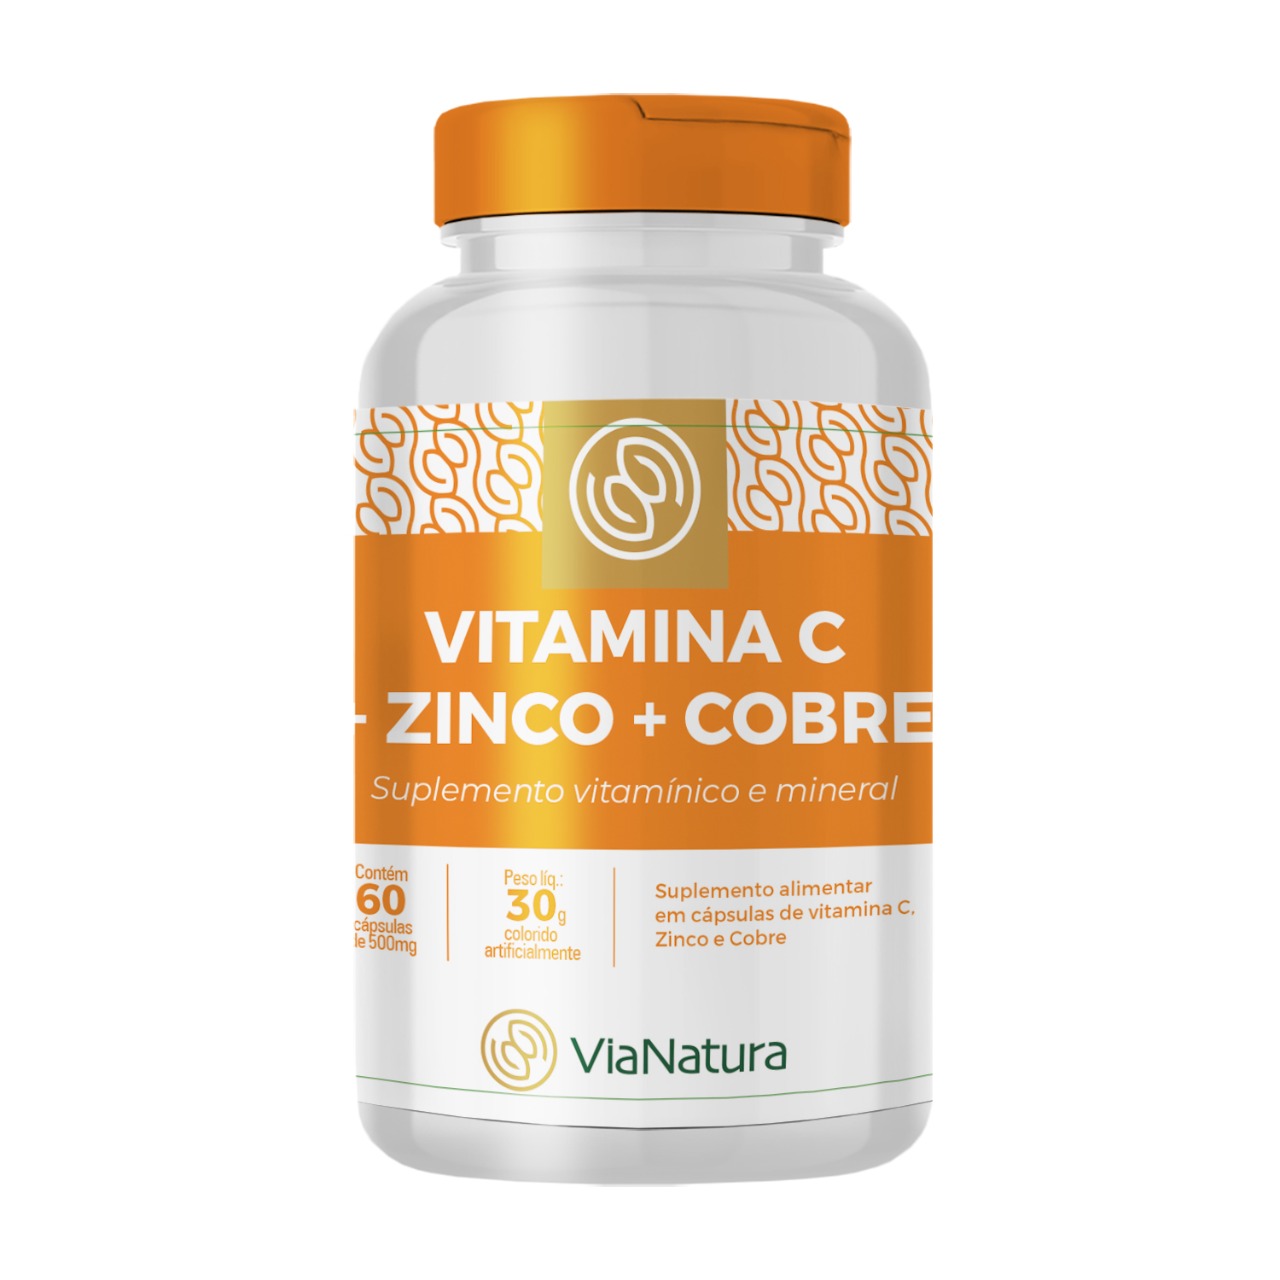 2x - Vitamina C com Zinco e Cobre - 60 Cápsulas - 500mg - Frete Grátis!!!